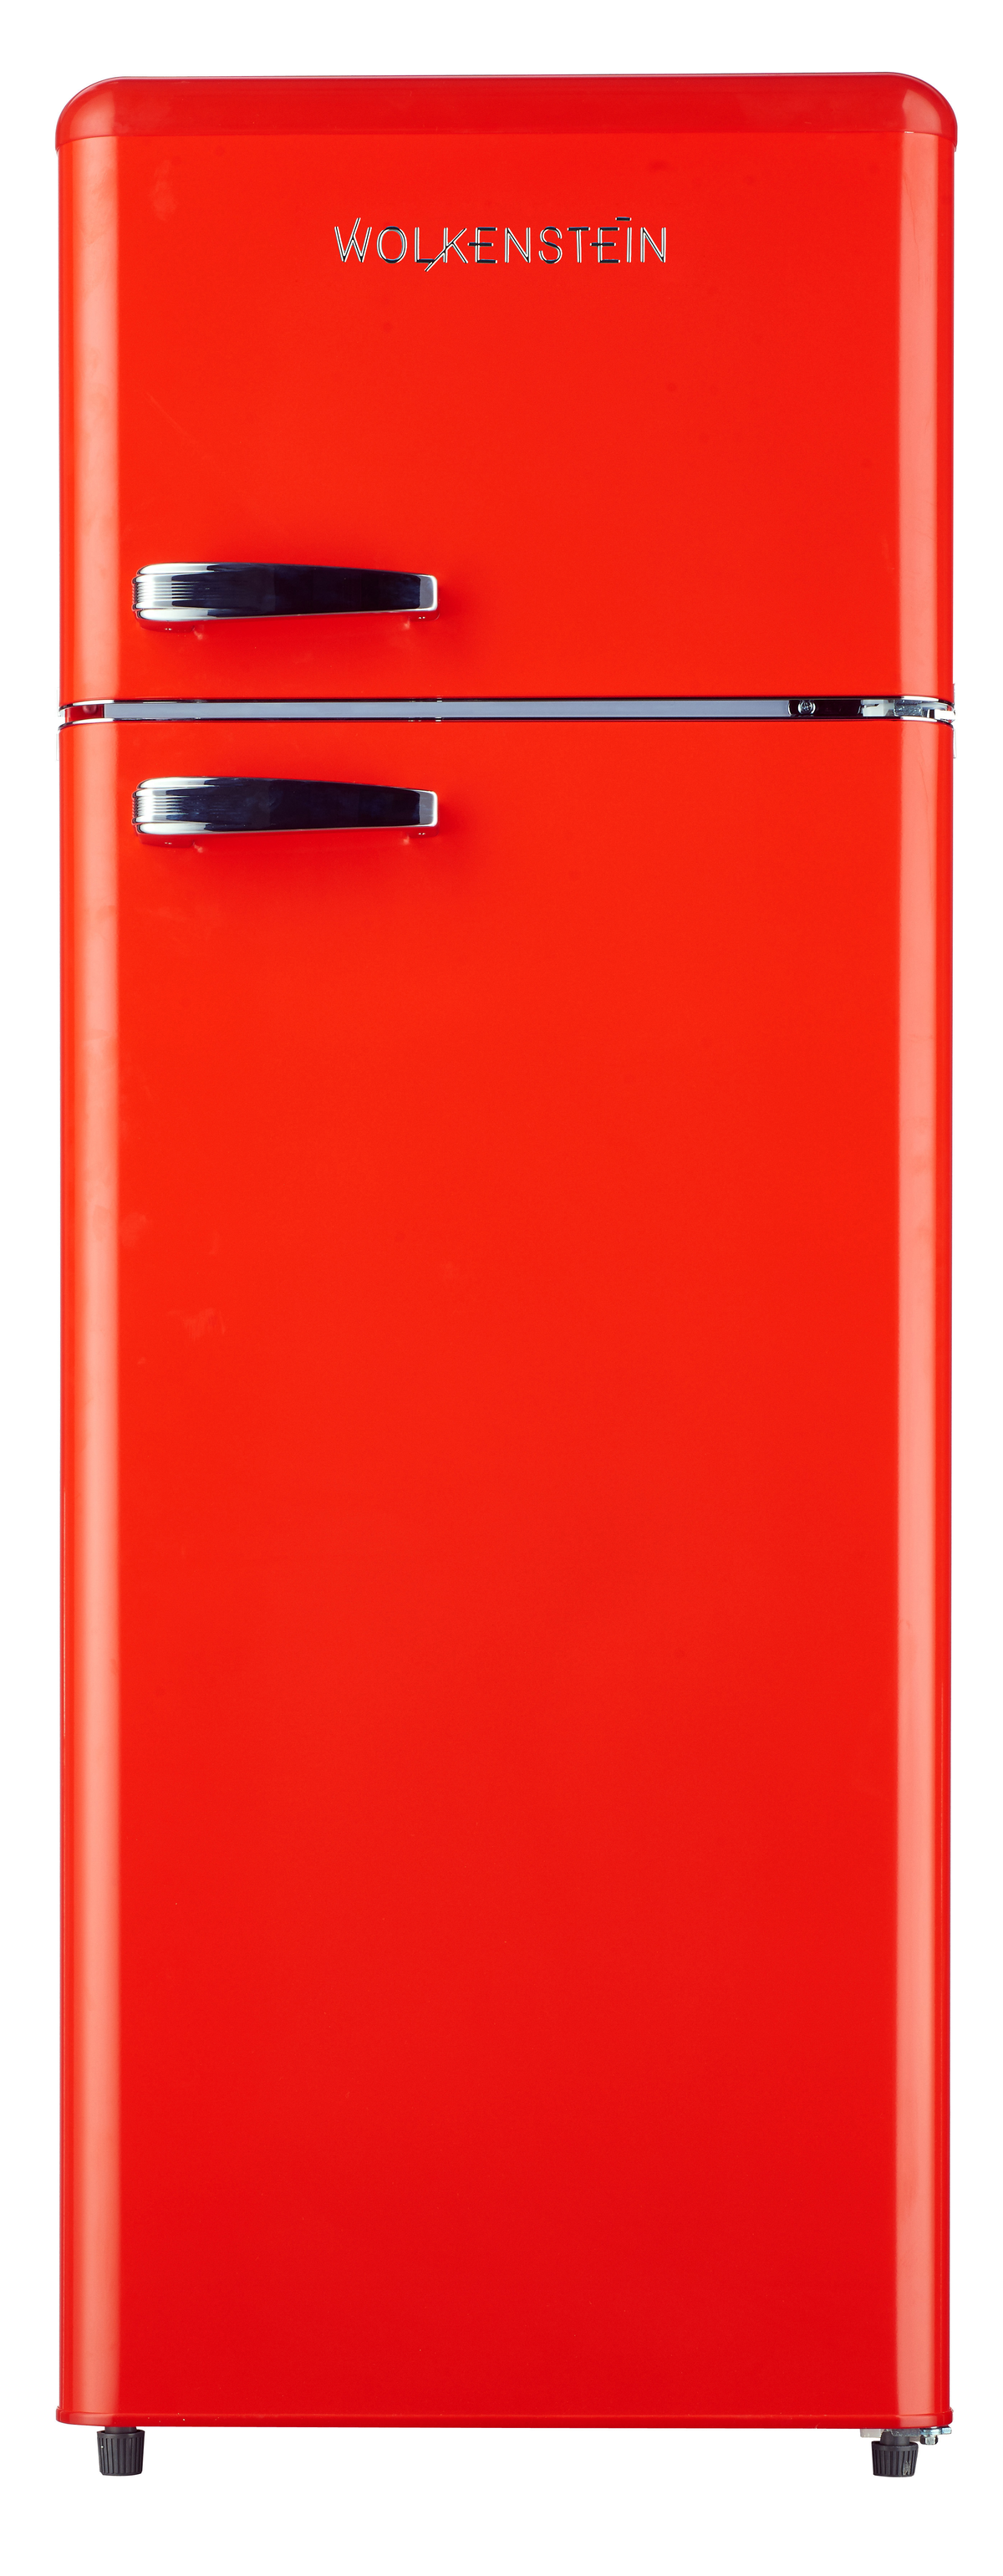 WOLKENSTEIN (E, hoch, kWh, 174 mm RT R GK212.4 Kühlgefrierkombination Rot) 1456